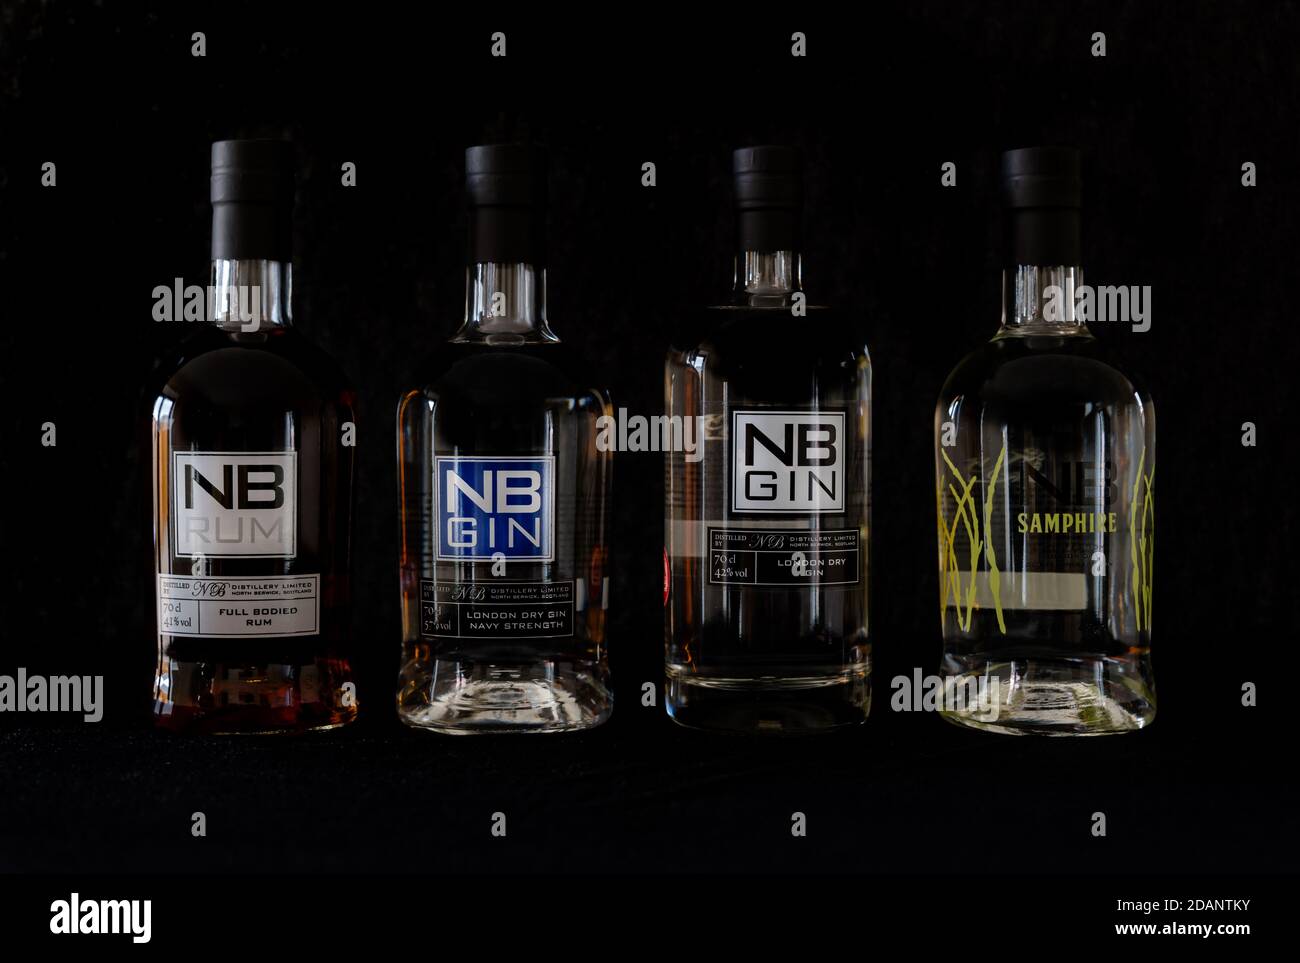 Botellas de destilería North Berwick: NB run, NB Navy Strength gin, NB gin & NB Samphire gin Foto de stock